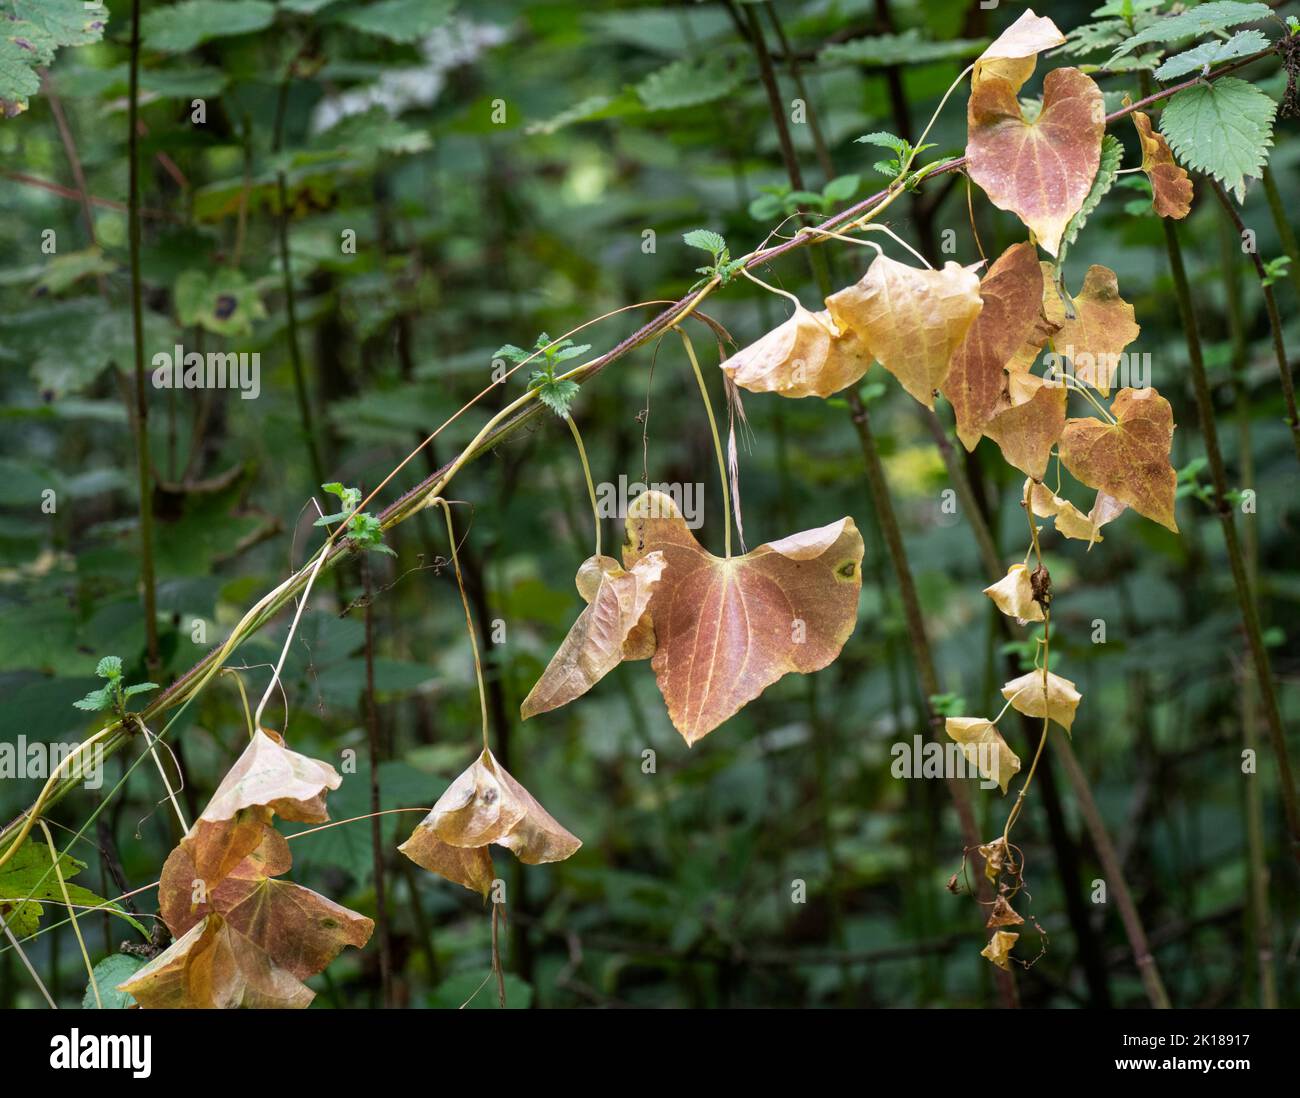 Des feuilles mourantes en chute libre à l'automne d'une plante de mauvaises herbes de liaison, également connue sous le nom de Convolvulus. L'usine d'escalade est considérée comme une nuisance par les jardiniers mais le Banque D'Images